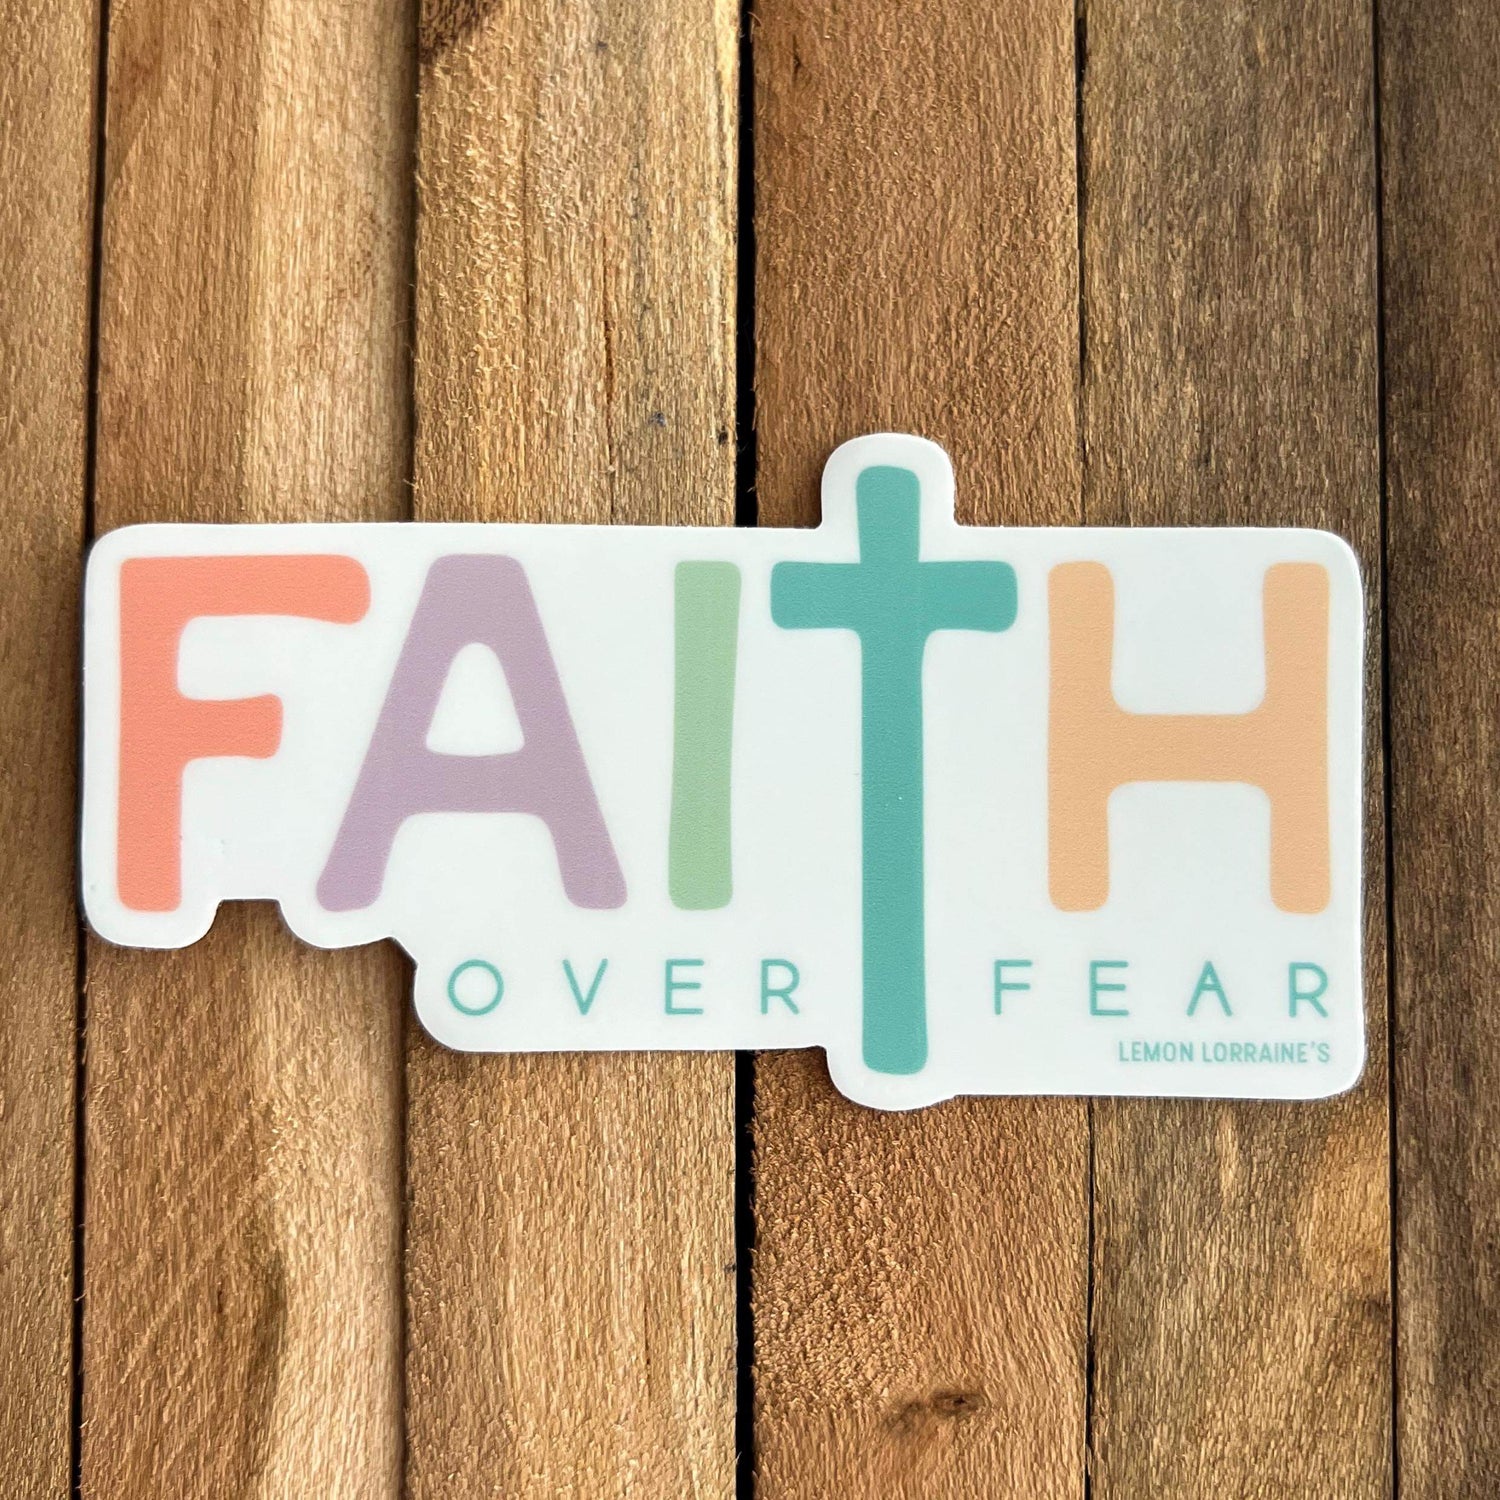 FAITH OVER FEAR Sticker